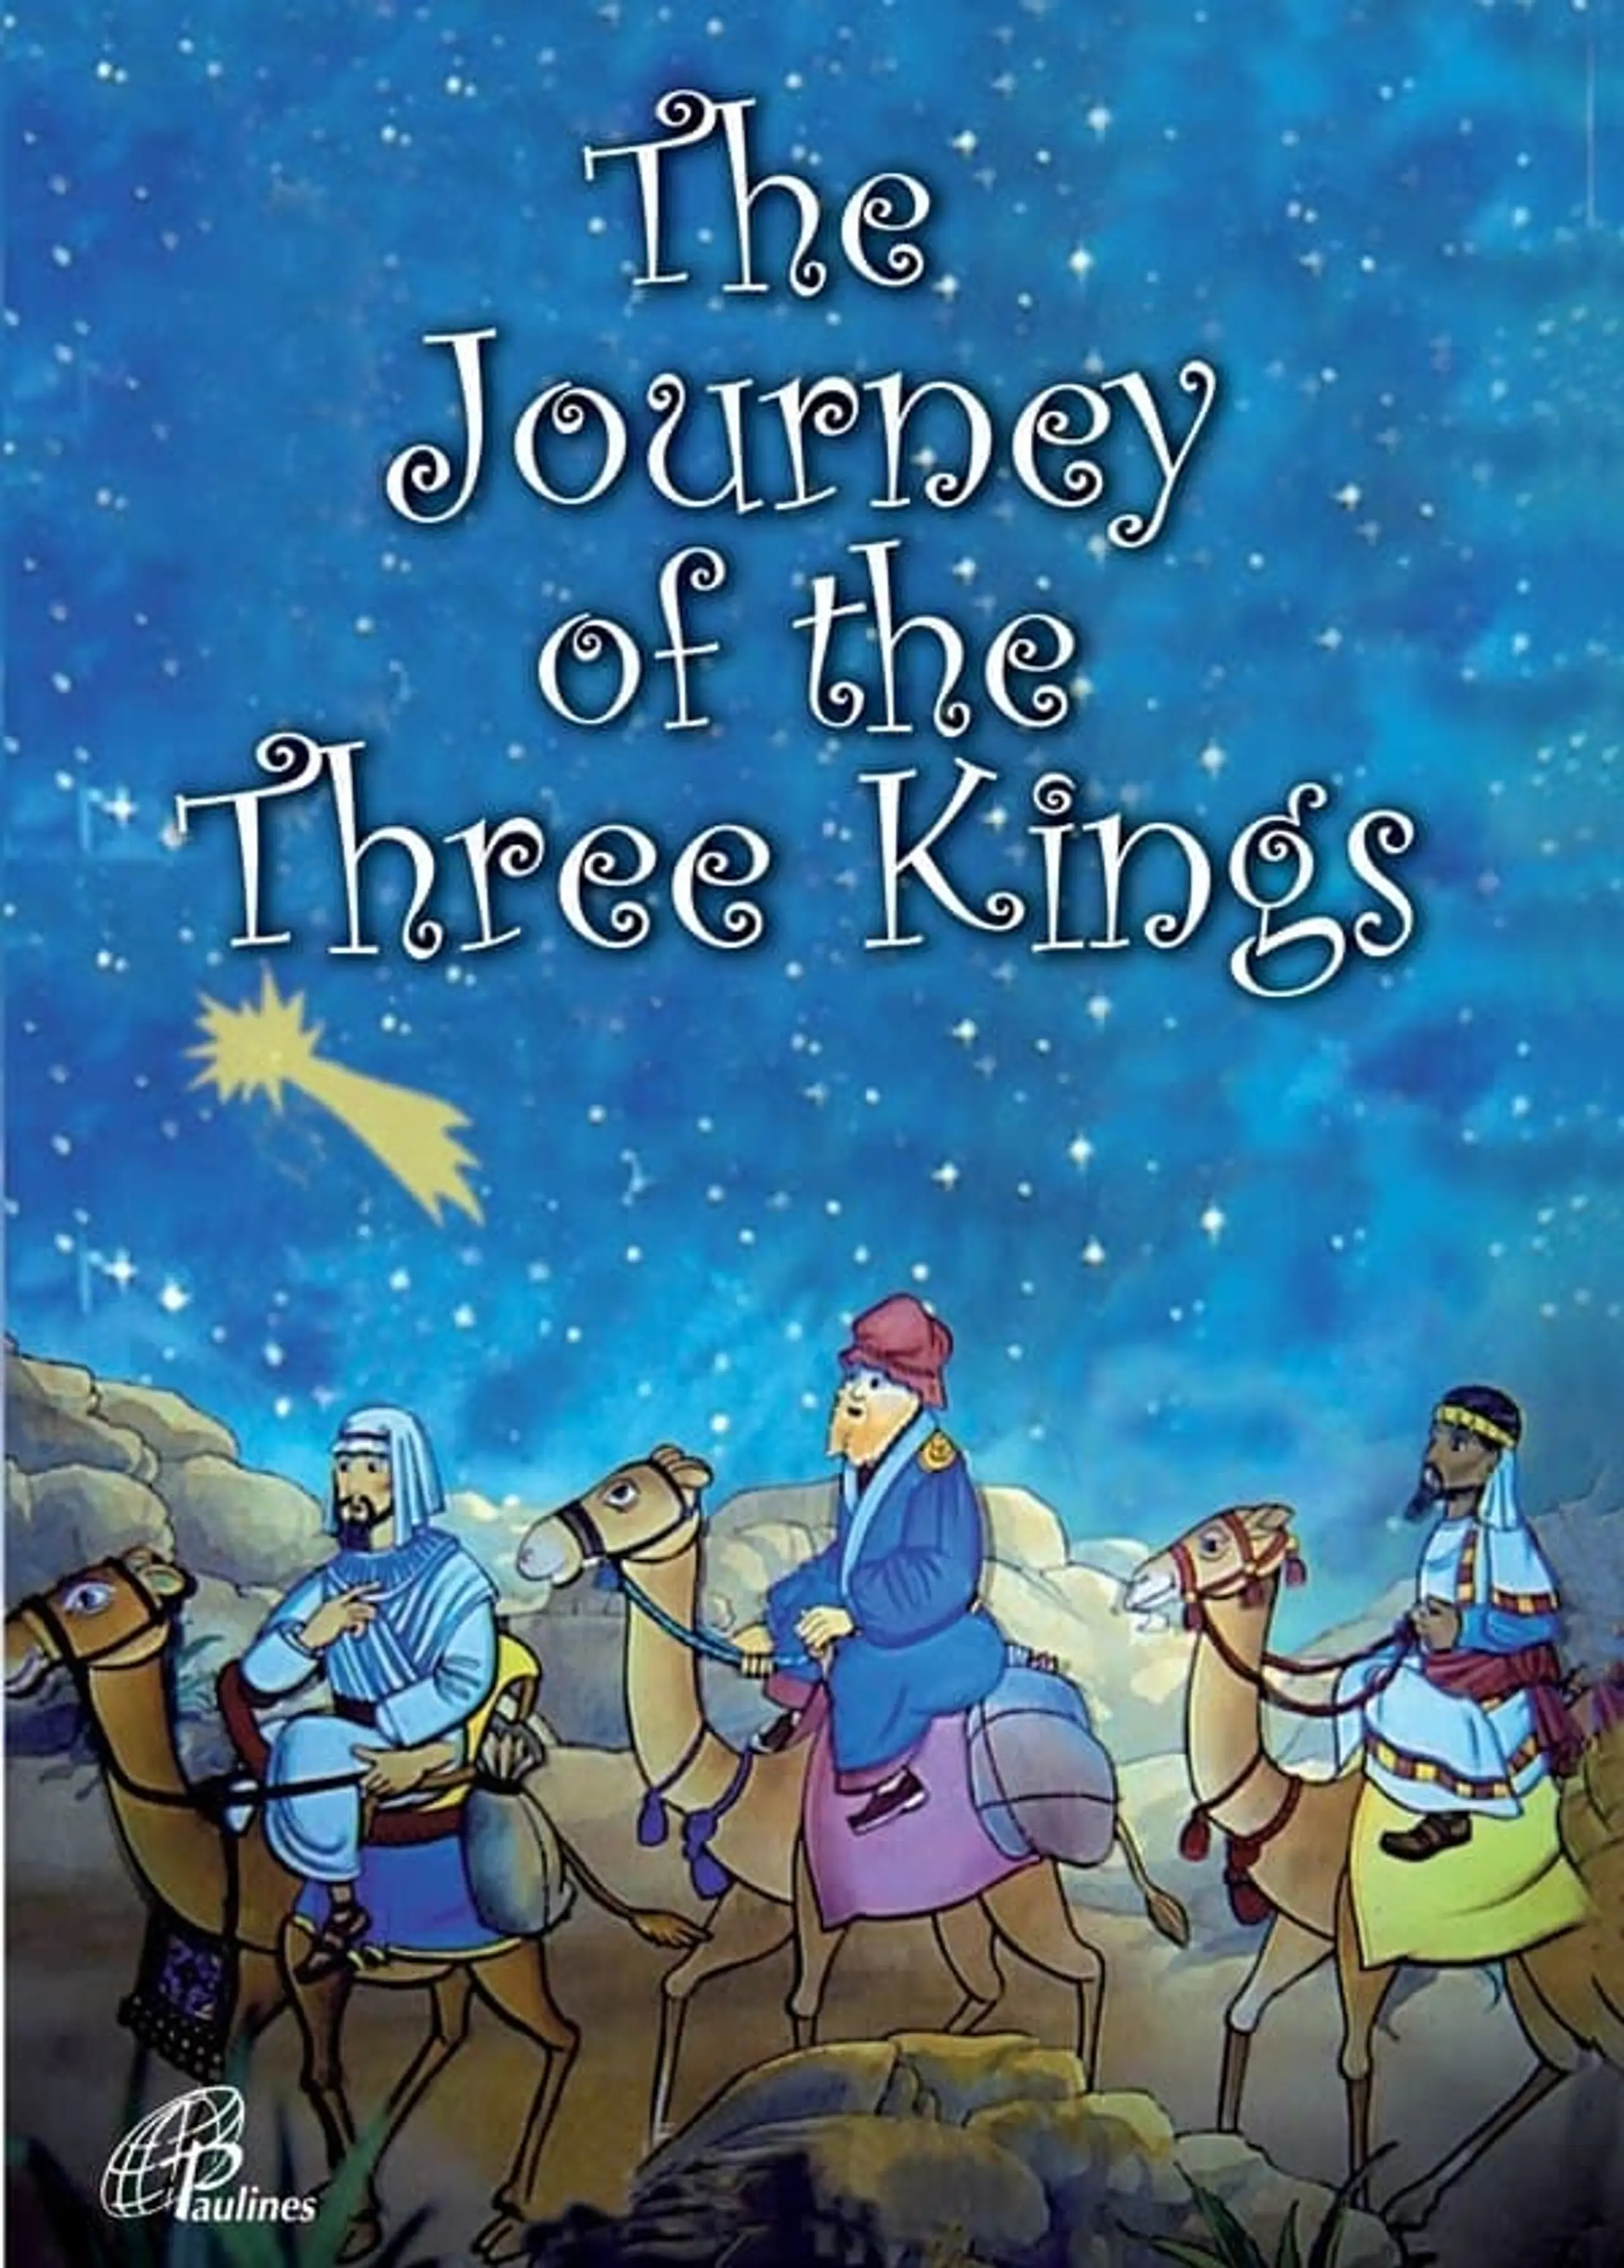 Cesta tří králů